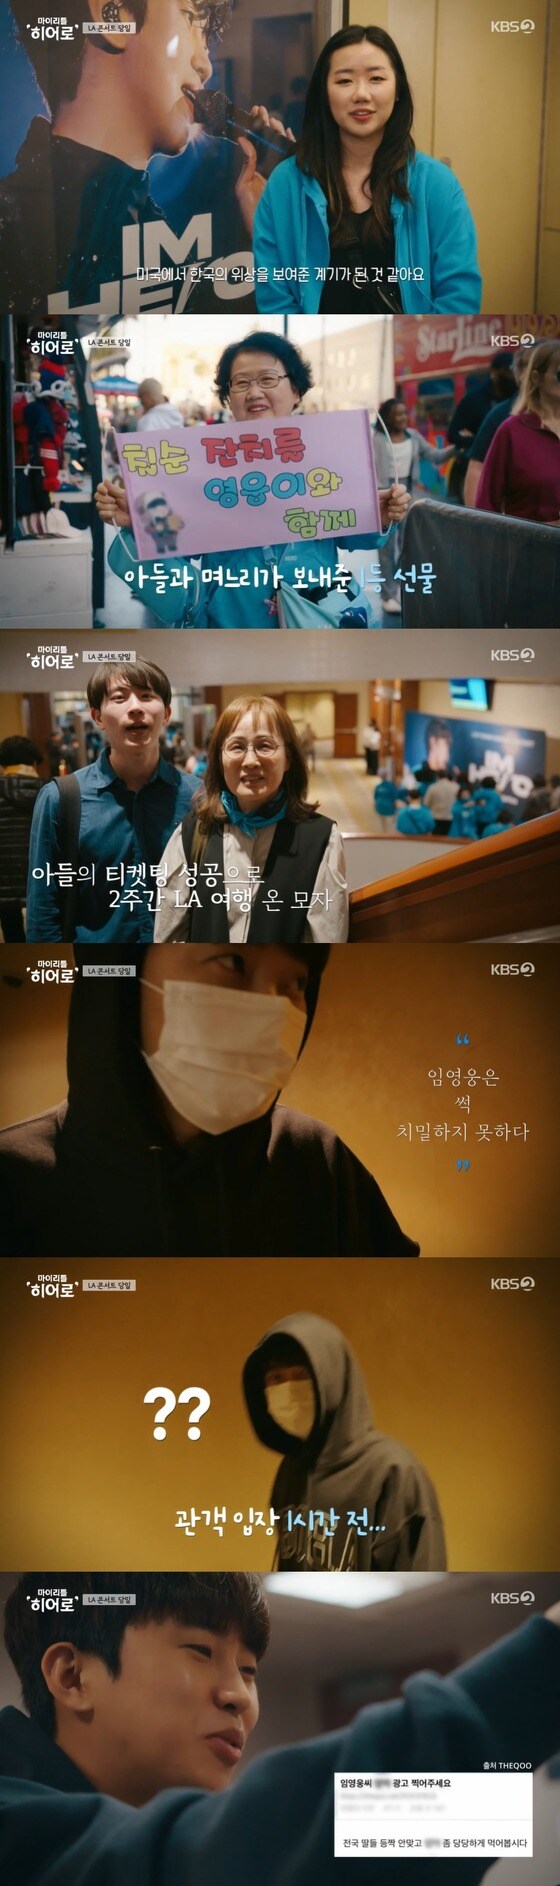 KBS 2TV '마이 리틀 히어로' 방송 화면 캡처